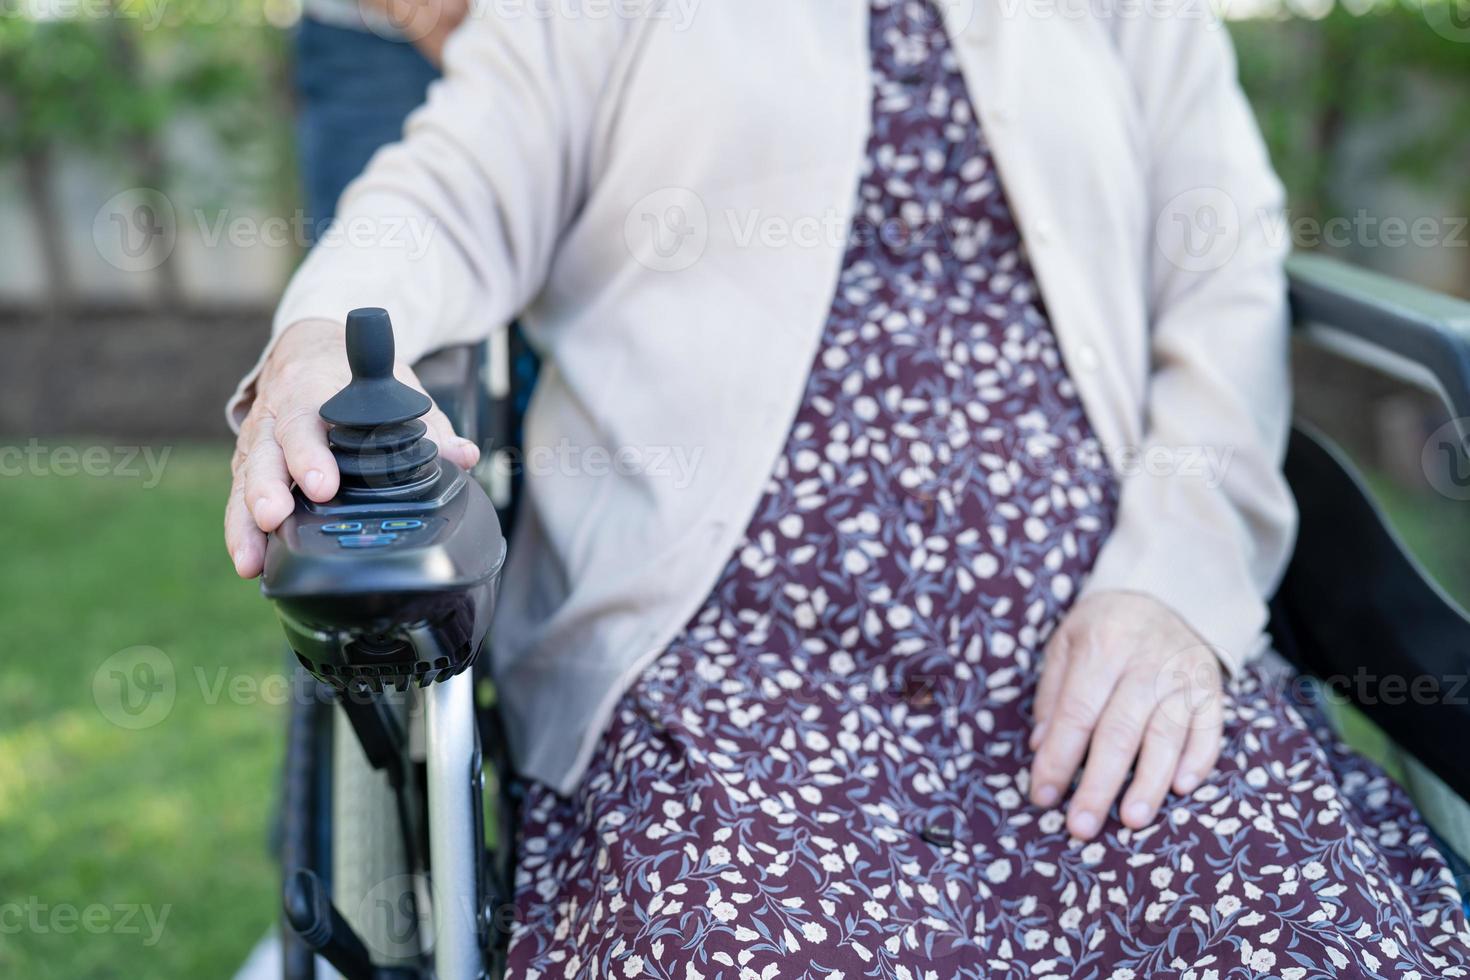 asiatisk senior eller äldre gammal damkvinnapatient på elektrisk rullstol med fjärrkontroll på vårdavdelningen, hälsosamt starkt medicinskt koncept foto